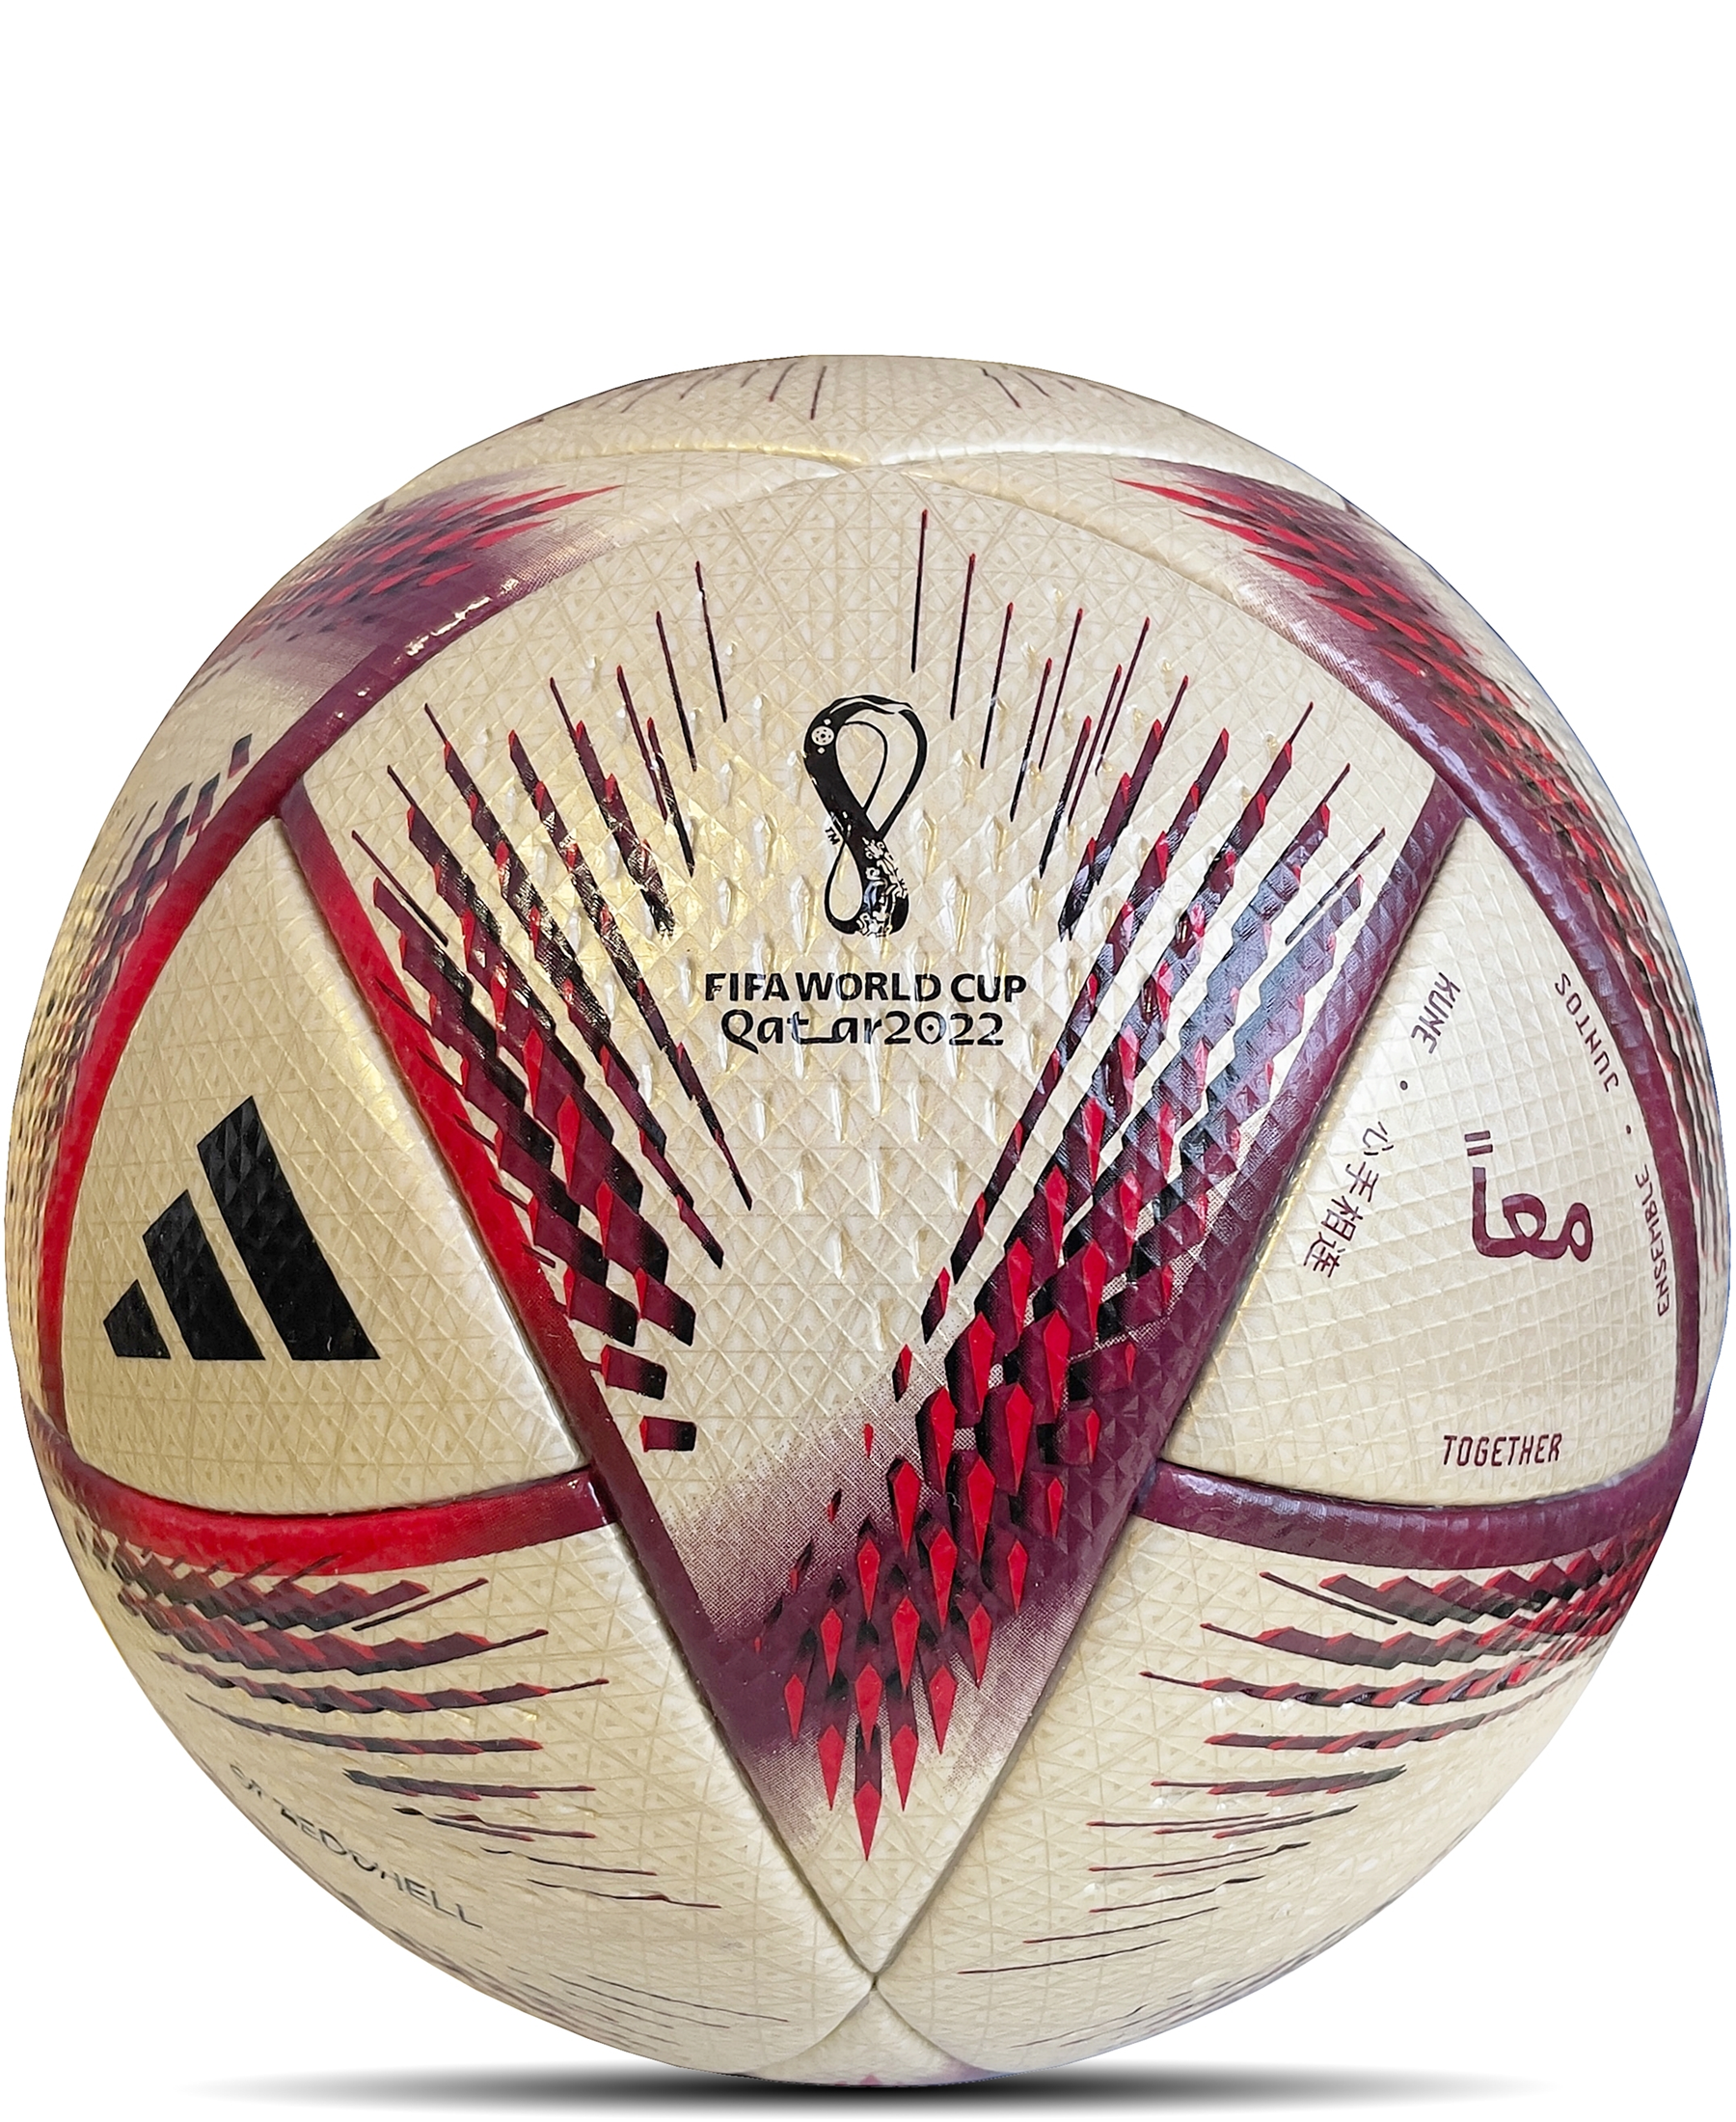 adidas Official Match Ball Al Hilm FIFA WM Qatar 2022 - Der offizielle Matchball der FIFA Weltmeisterschaft 2022 in Katar. Dieser hochwertige Spielball bietet ein präzises Flugverhalten und hervorragende Spieleigenschaften. Mit seinem einzigartigen Design und den offiziellen WM-Logos ist er ein Muss für Fußballfans und Sammler. Hol dir jetzt den offiziellen Matchball Al Hilm FIFA WM Qatar 2022 im Onlineshop von SHOP4TEAMSPORT. Perfekt für Training, Freizeitspiele und den Einsatz auf dem Platz